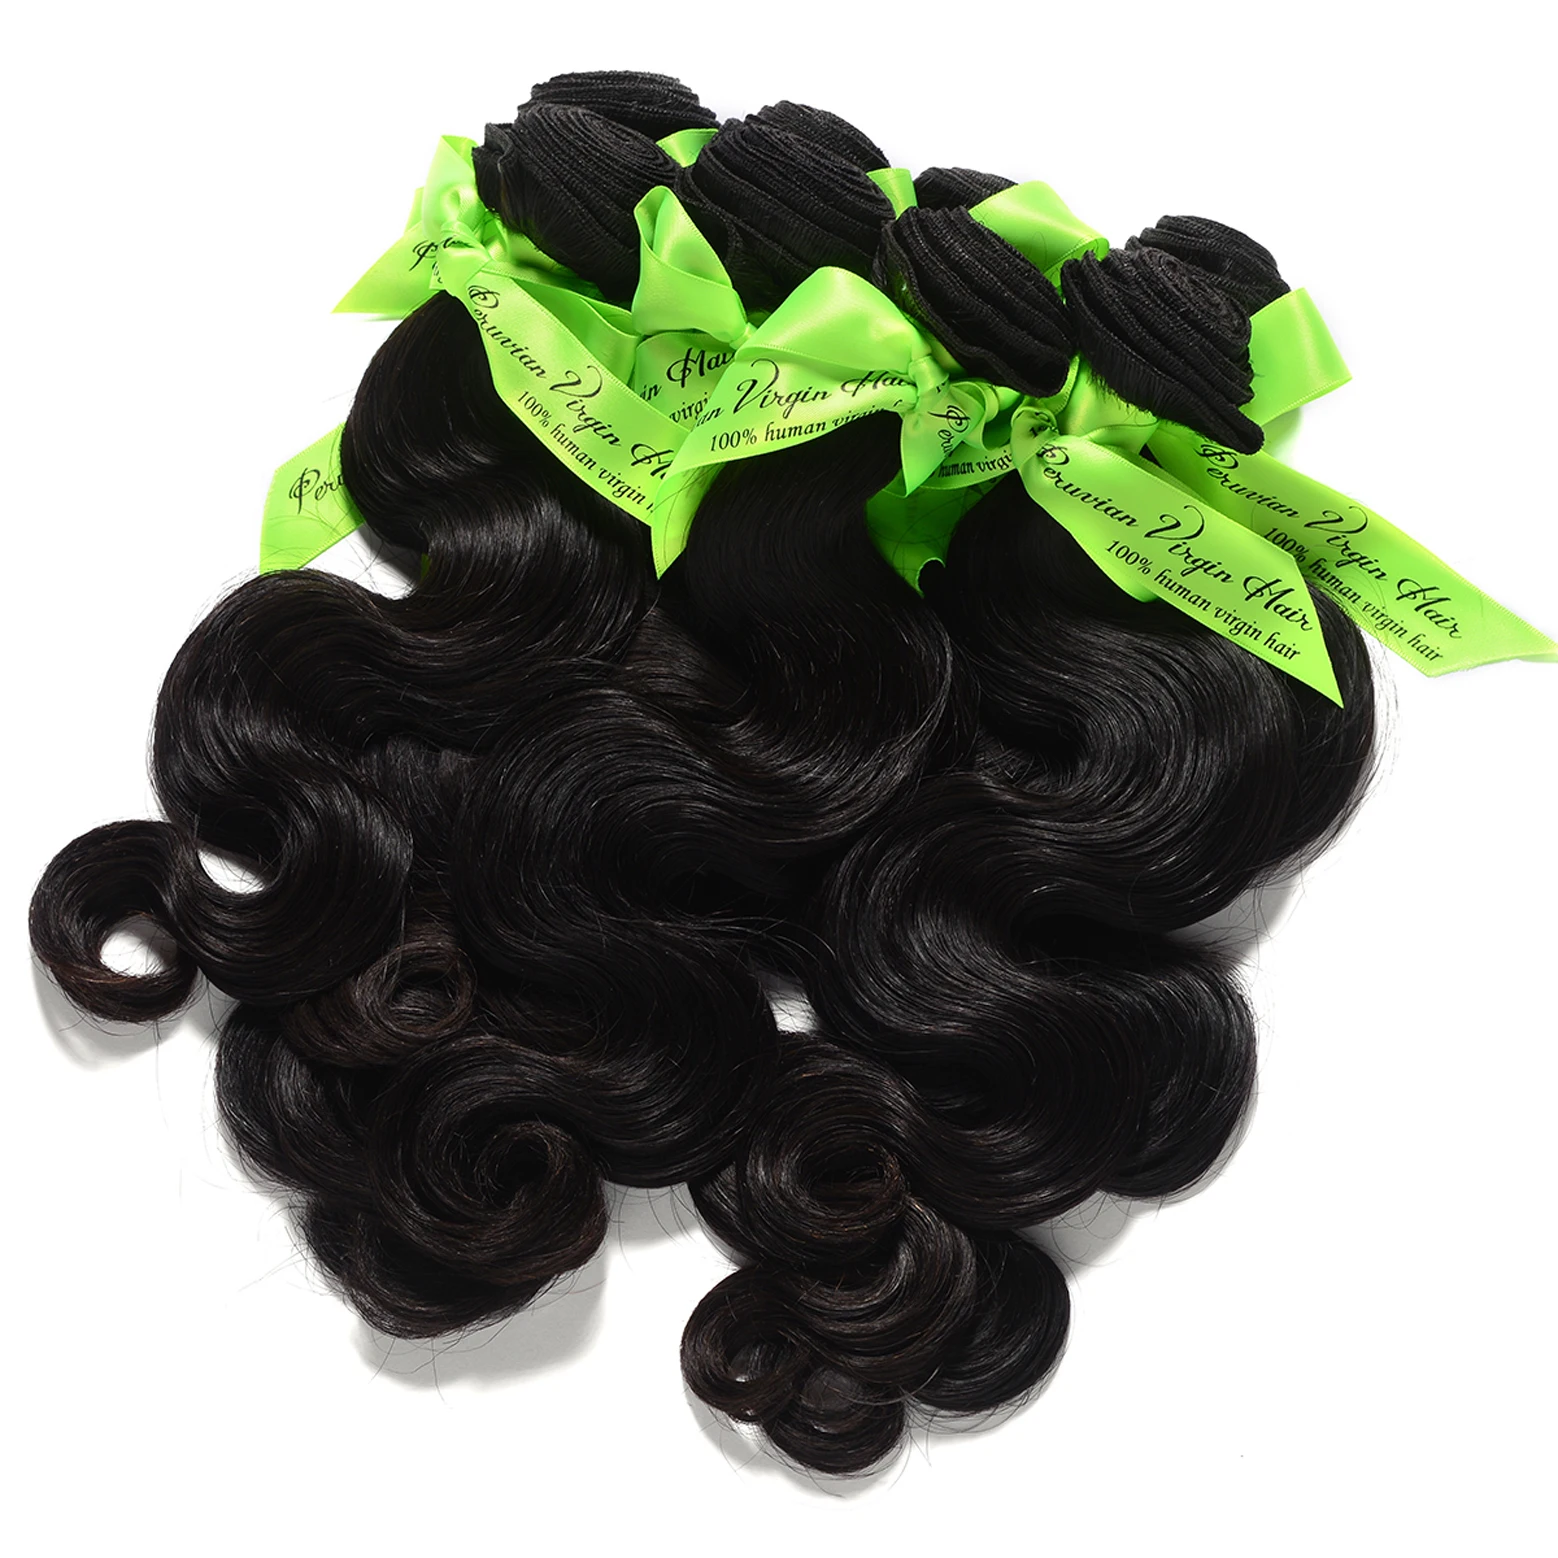 MOCHA Hair 10A перуанские девственные волосы объемная волна 3 пучка необработанные человеческие волосы для наращивания натуральный цвет